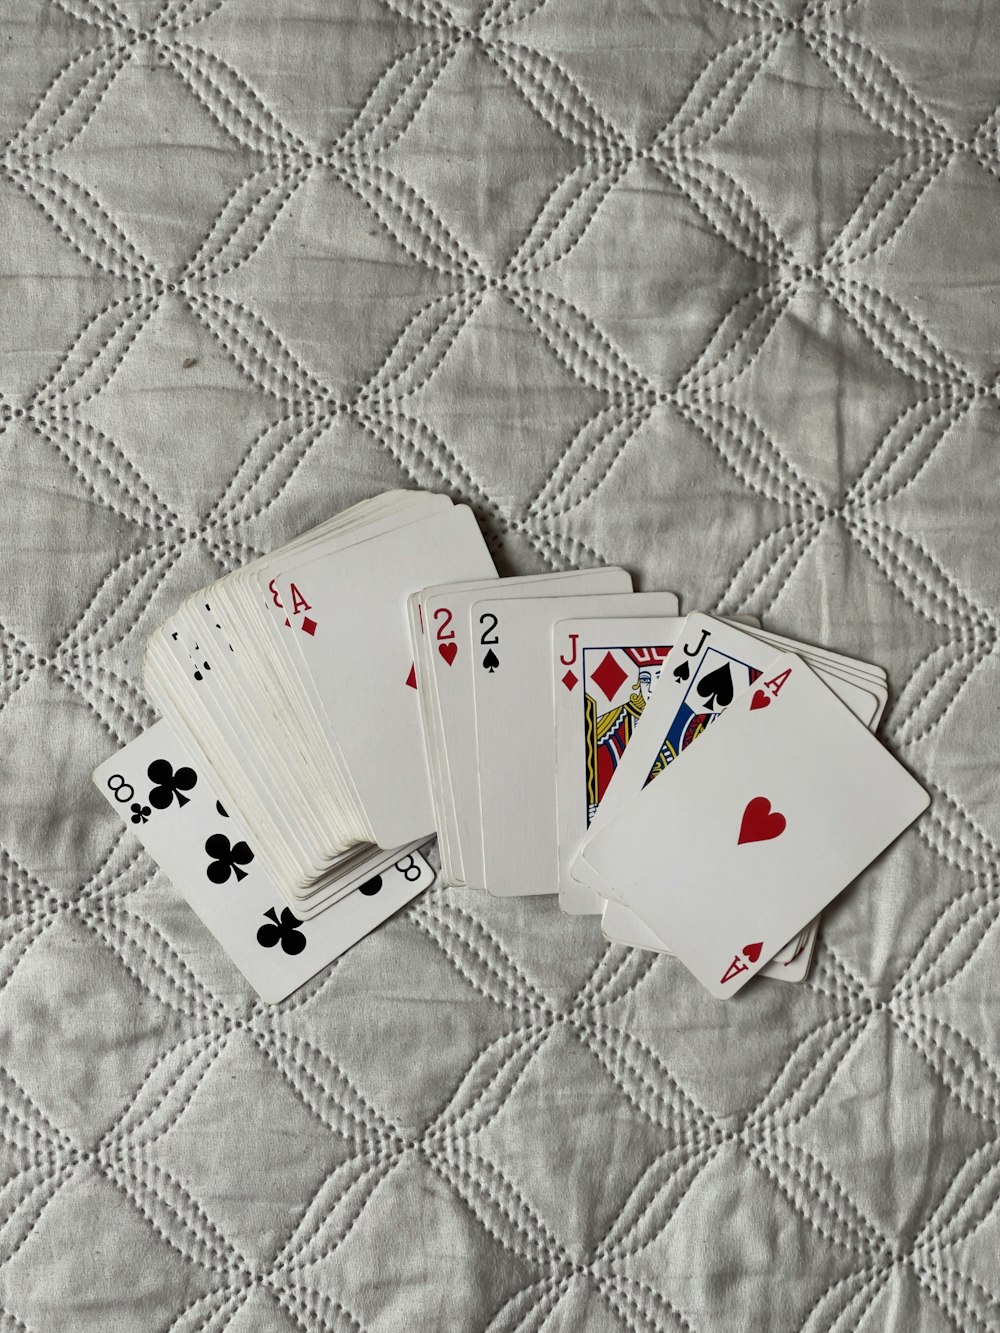 quatro cartas de baralho estão deitadas em uma colcha